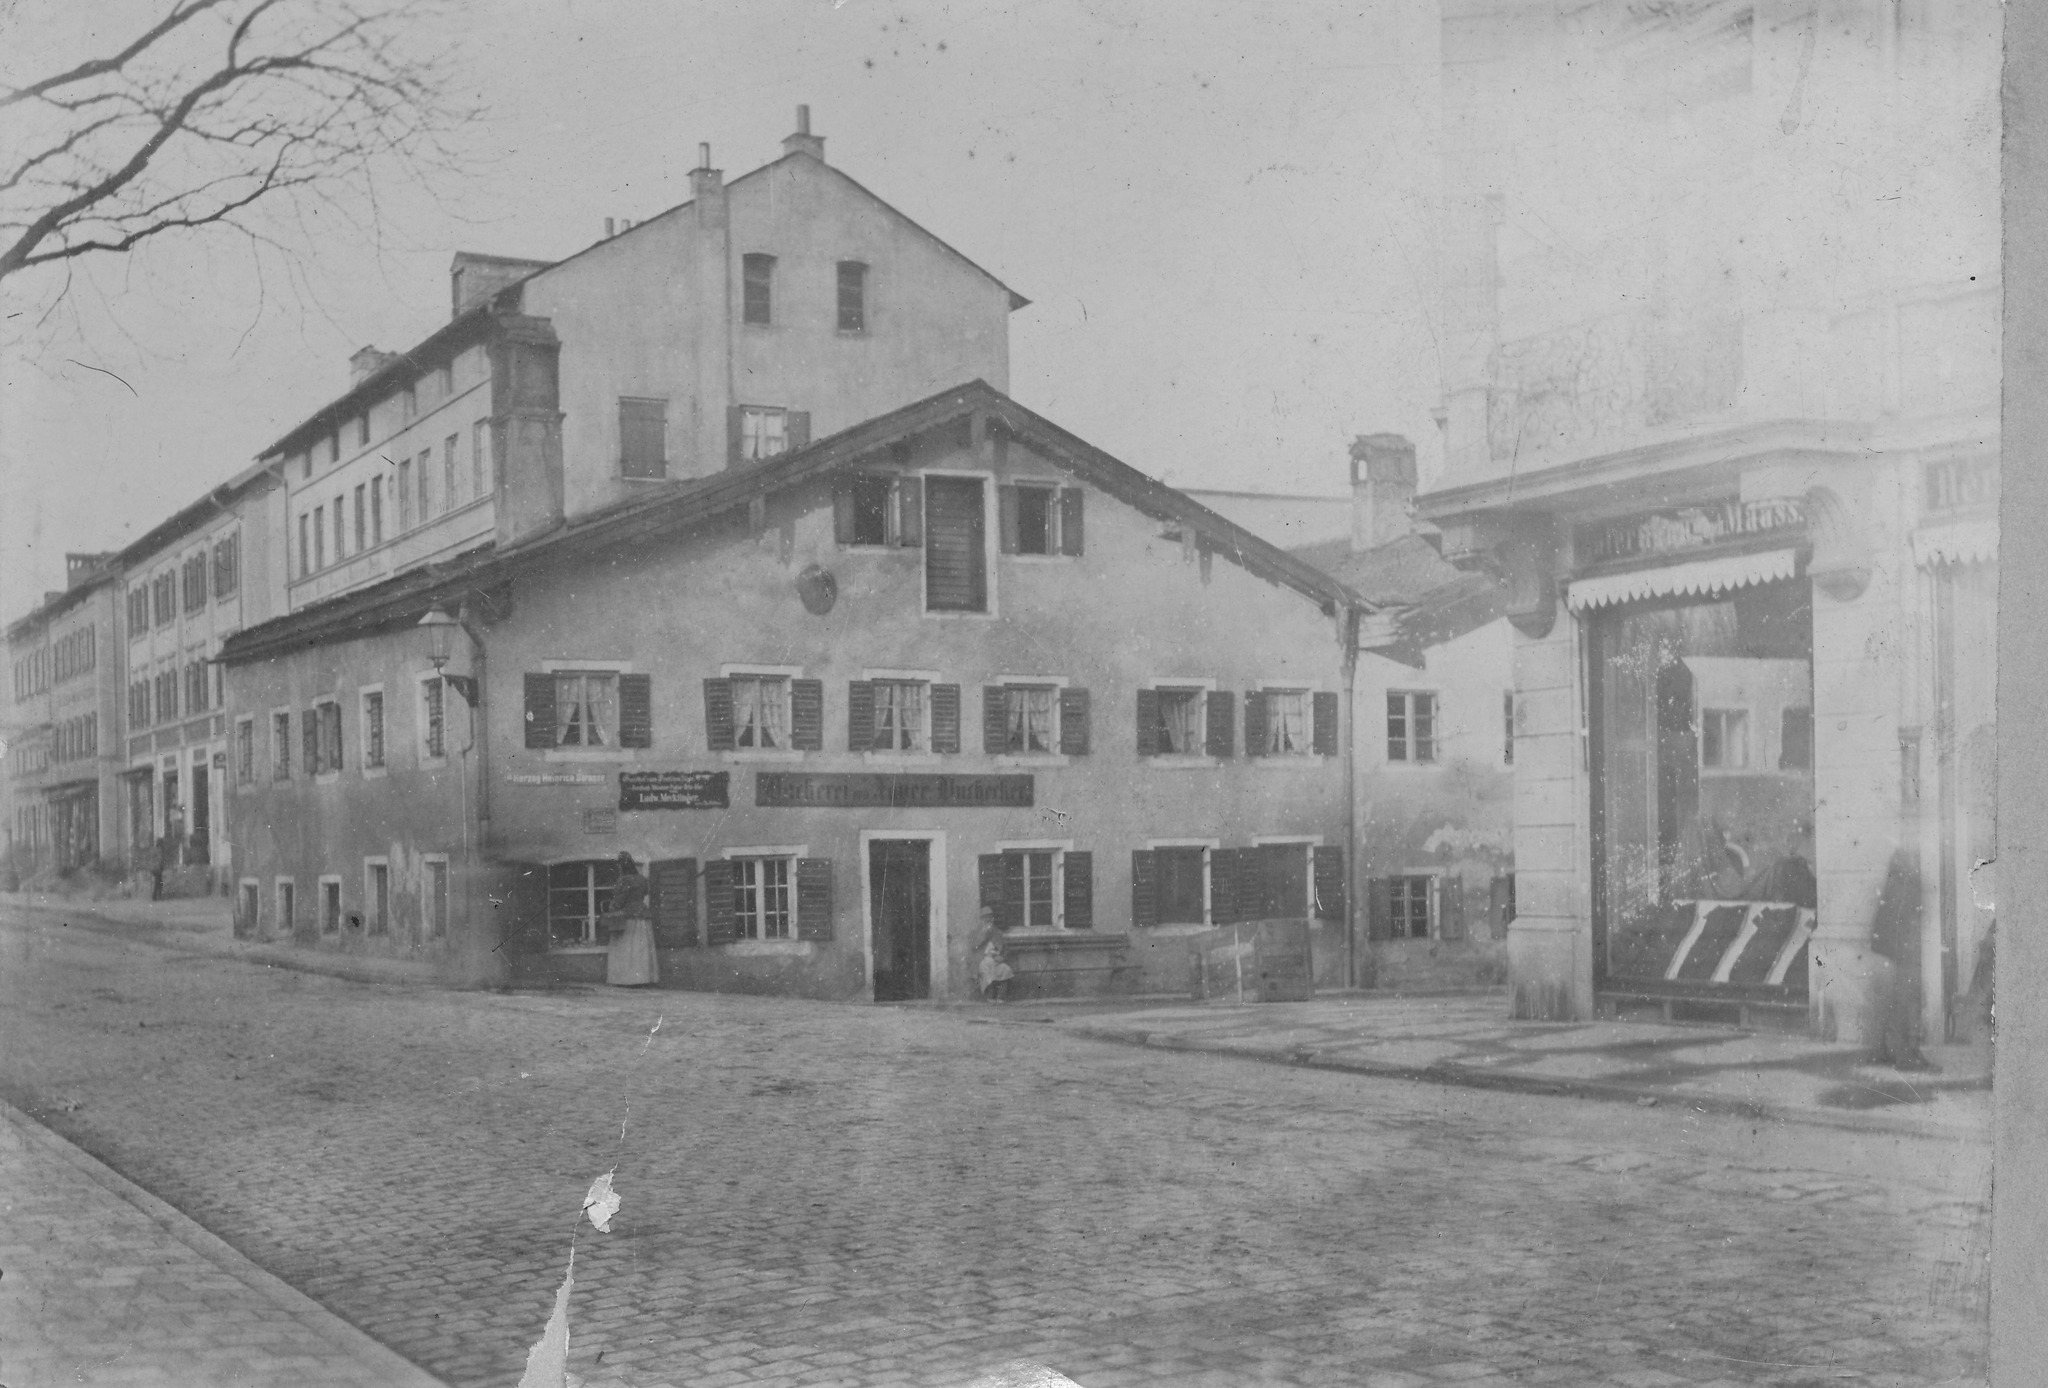 Münchnerstraße, Einfahrt Gillitzerstraße in Rosenheim mit späteren Buchecker-Haus in der Zeit um ca. 1900. Foto: Archiv Herbert Borrmann